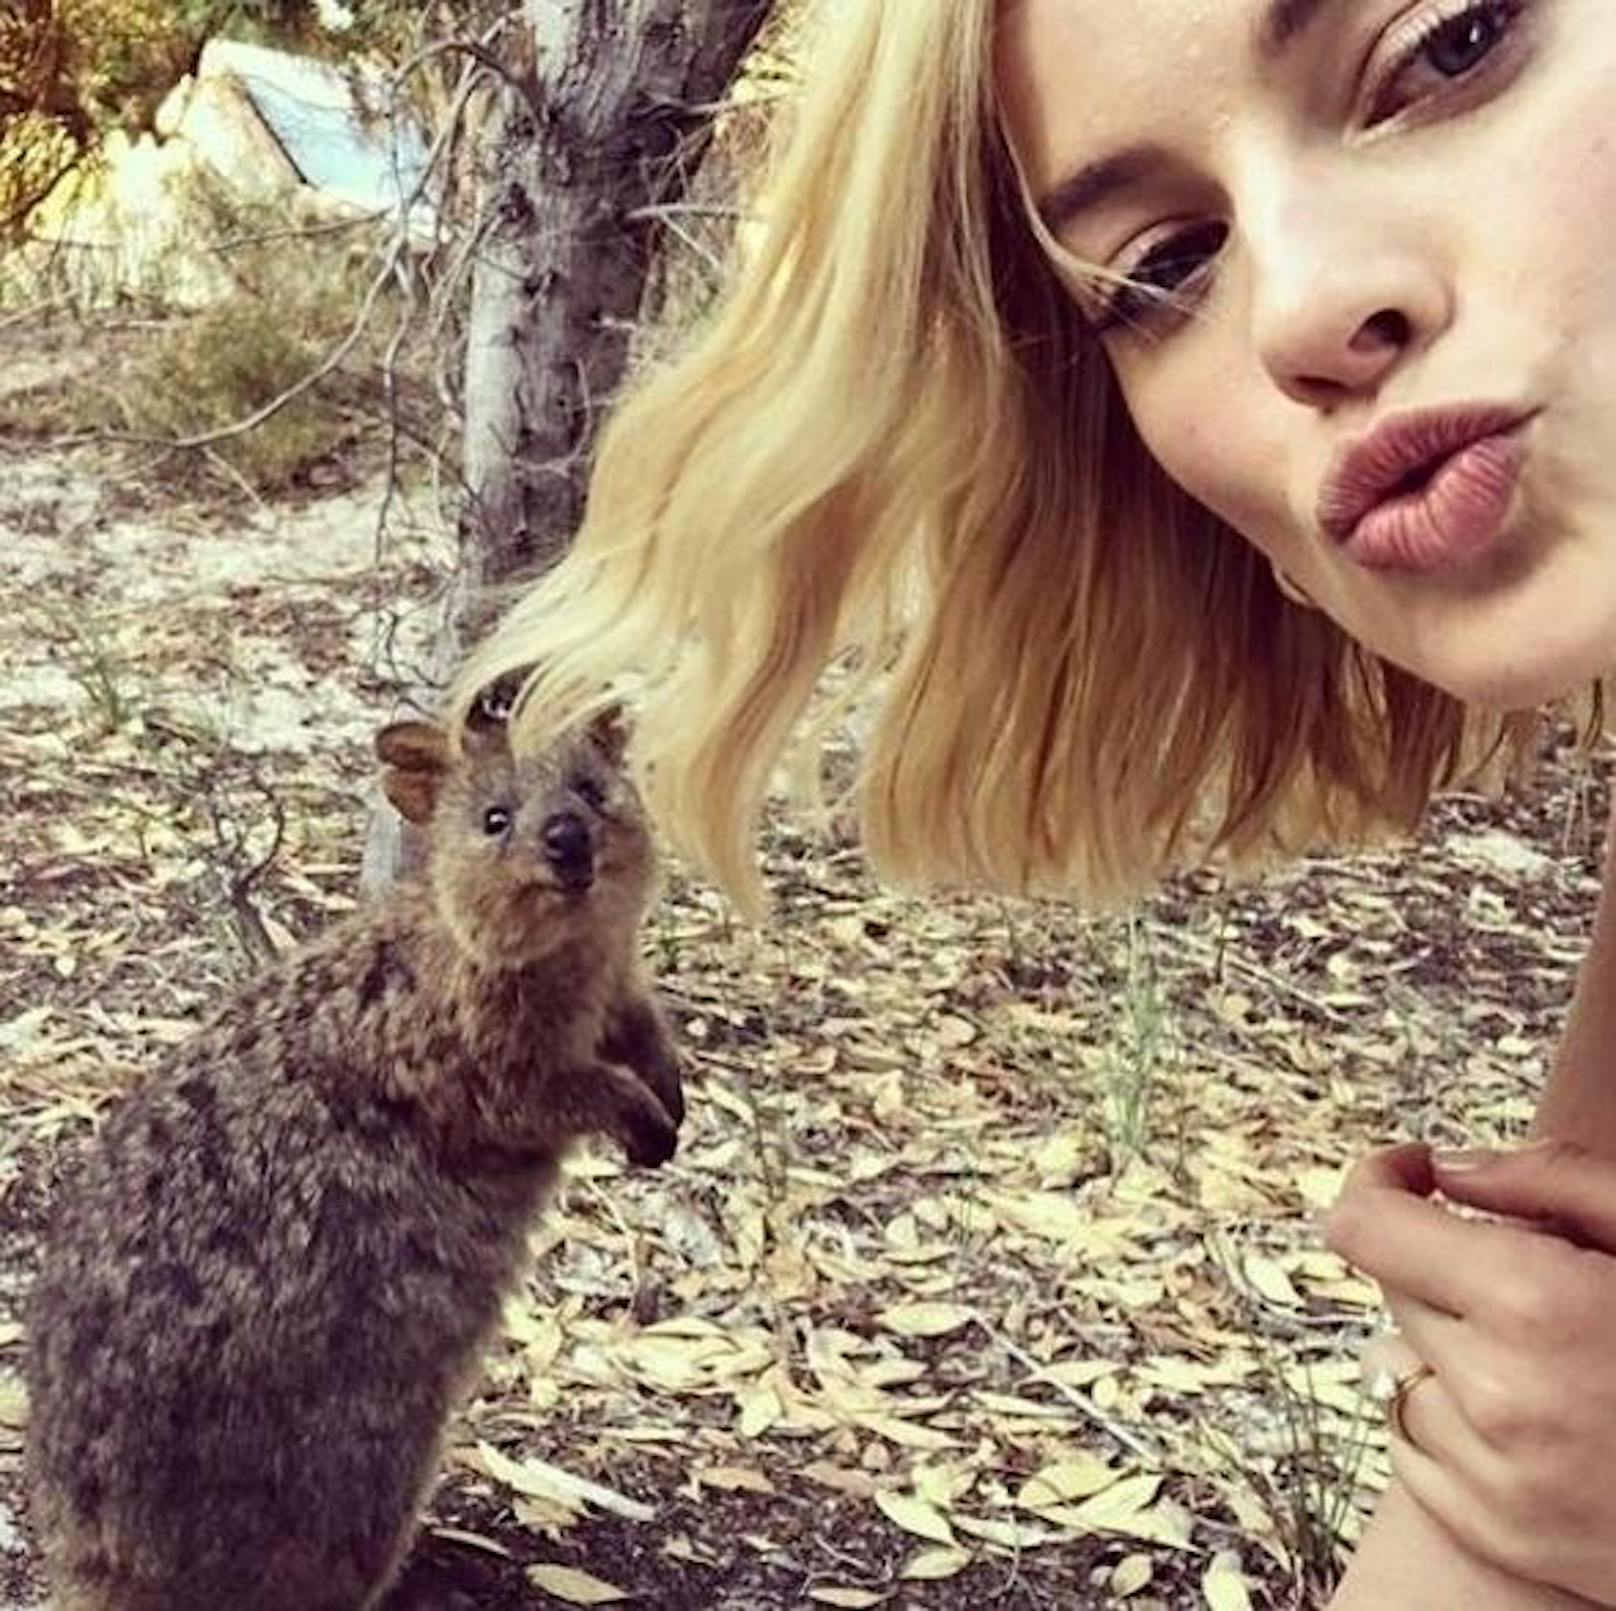 23.03.2018: Schauspielerin Margot Robbie schickt ihren Instagram-Fans liebe Grüße aus Australien. Für ein Selfie hat sie sich ein süßes Quokka vors Handy geholt.